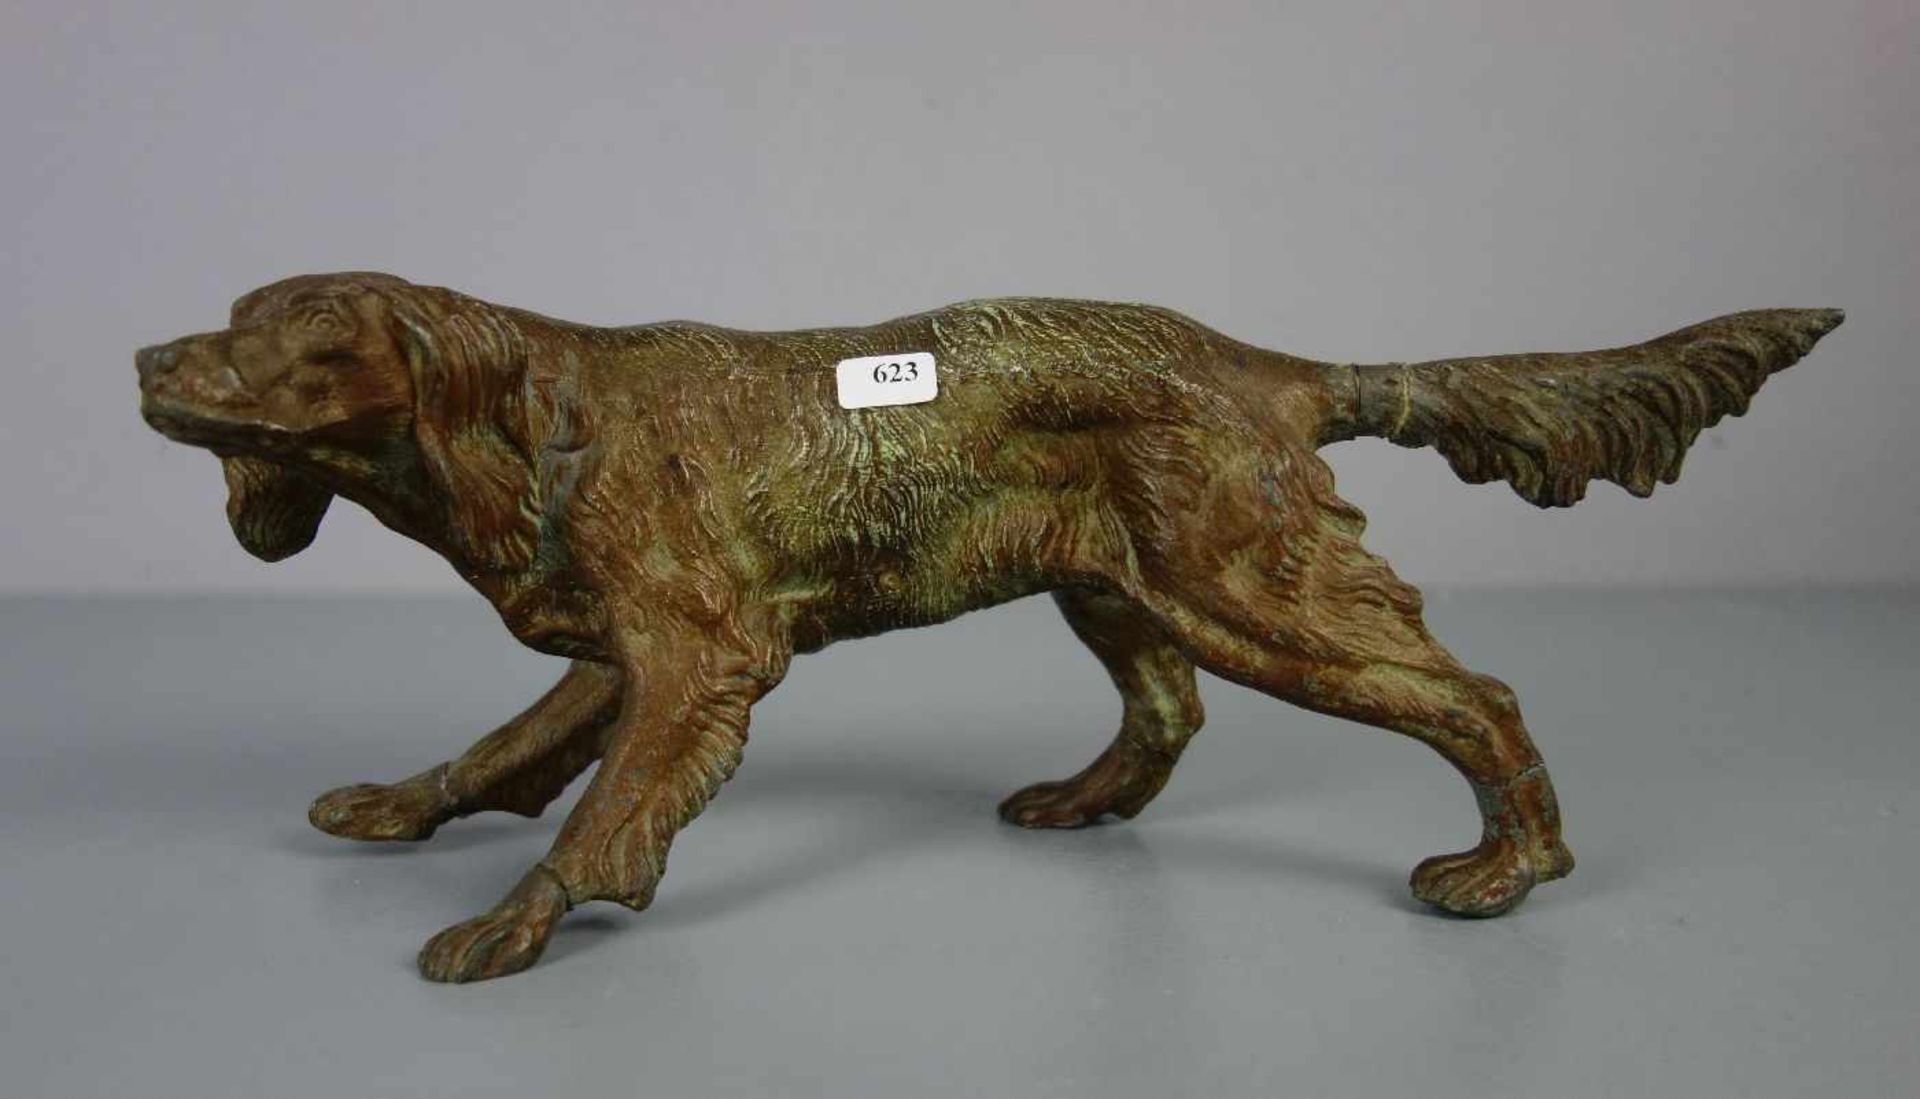 ANIMALIER / TIERBILDHAUER DES 19./20. JH., Skulptur / sculpture: "Jagdhund" / hunting dog,